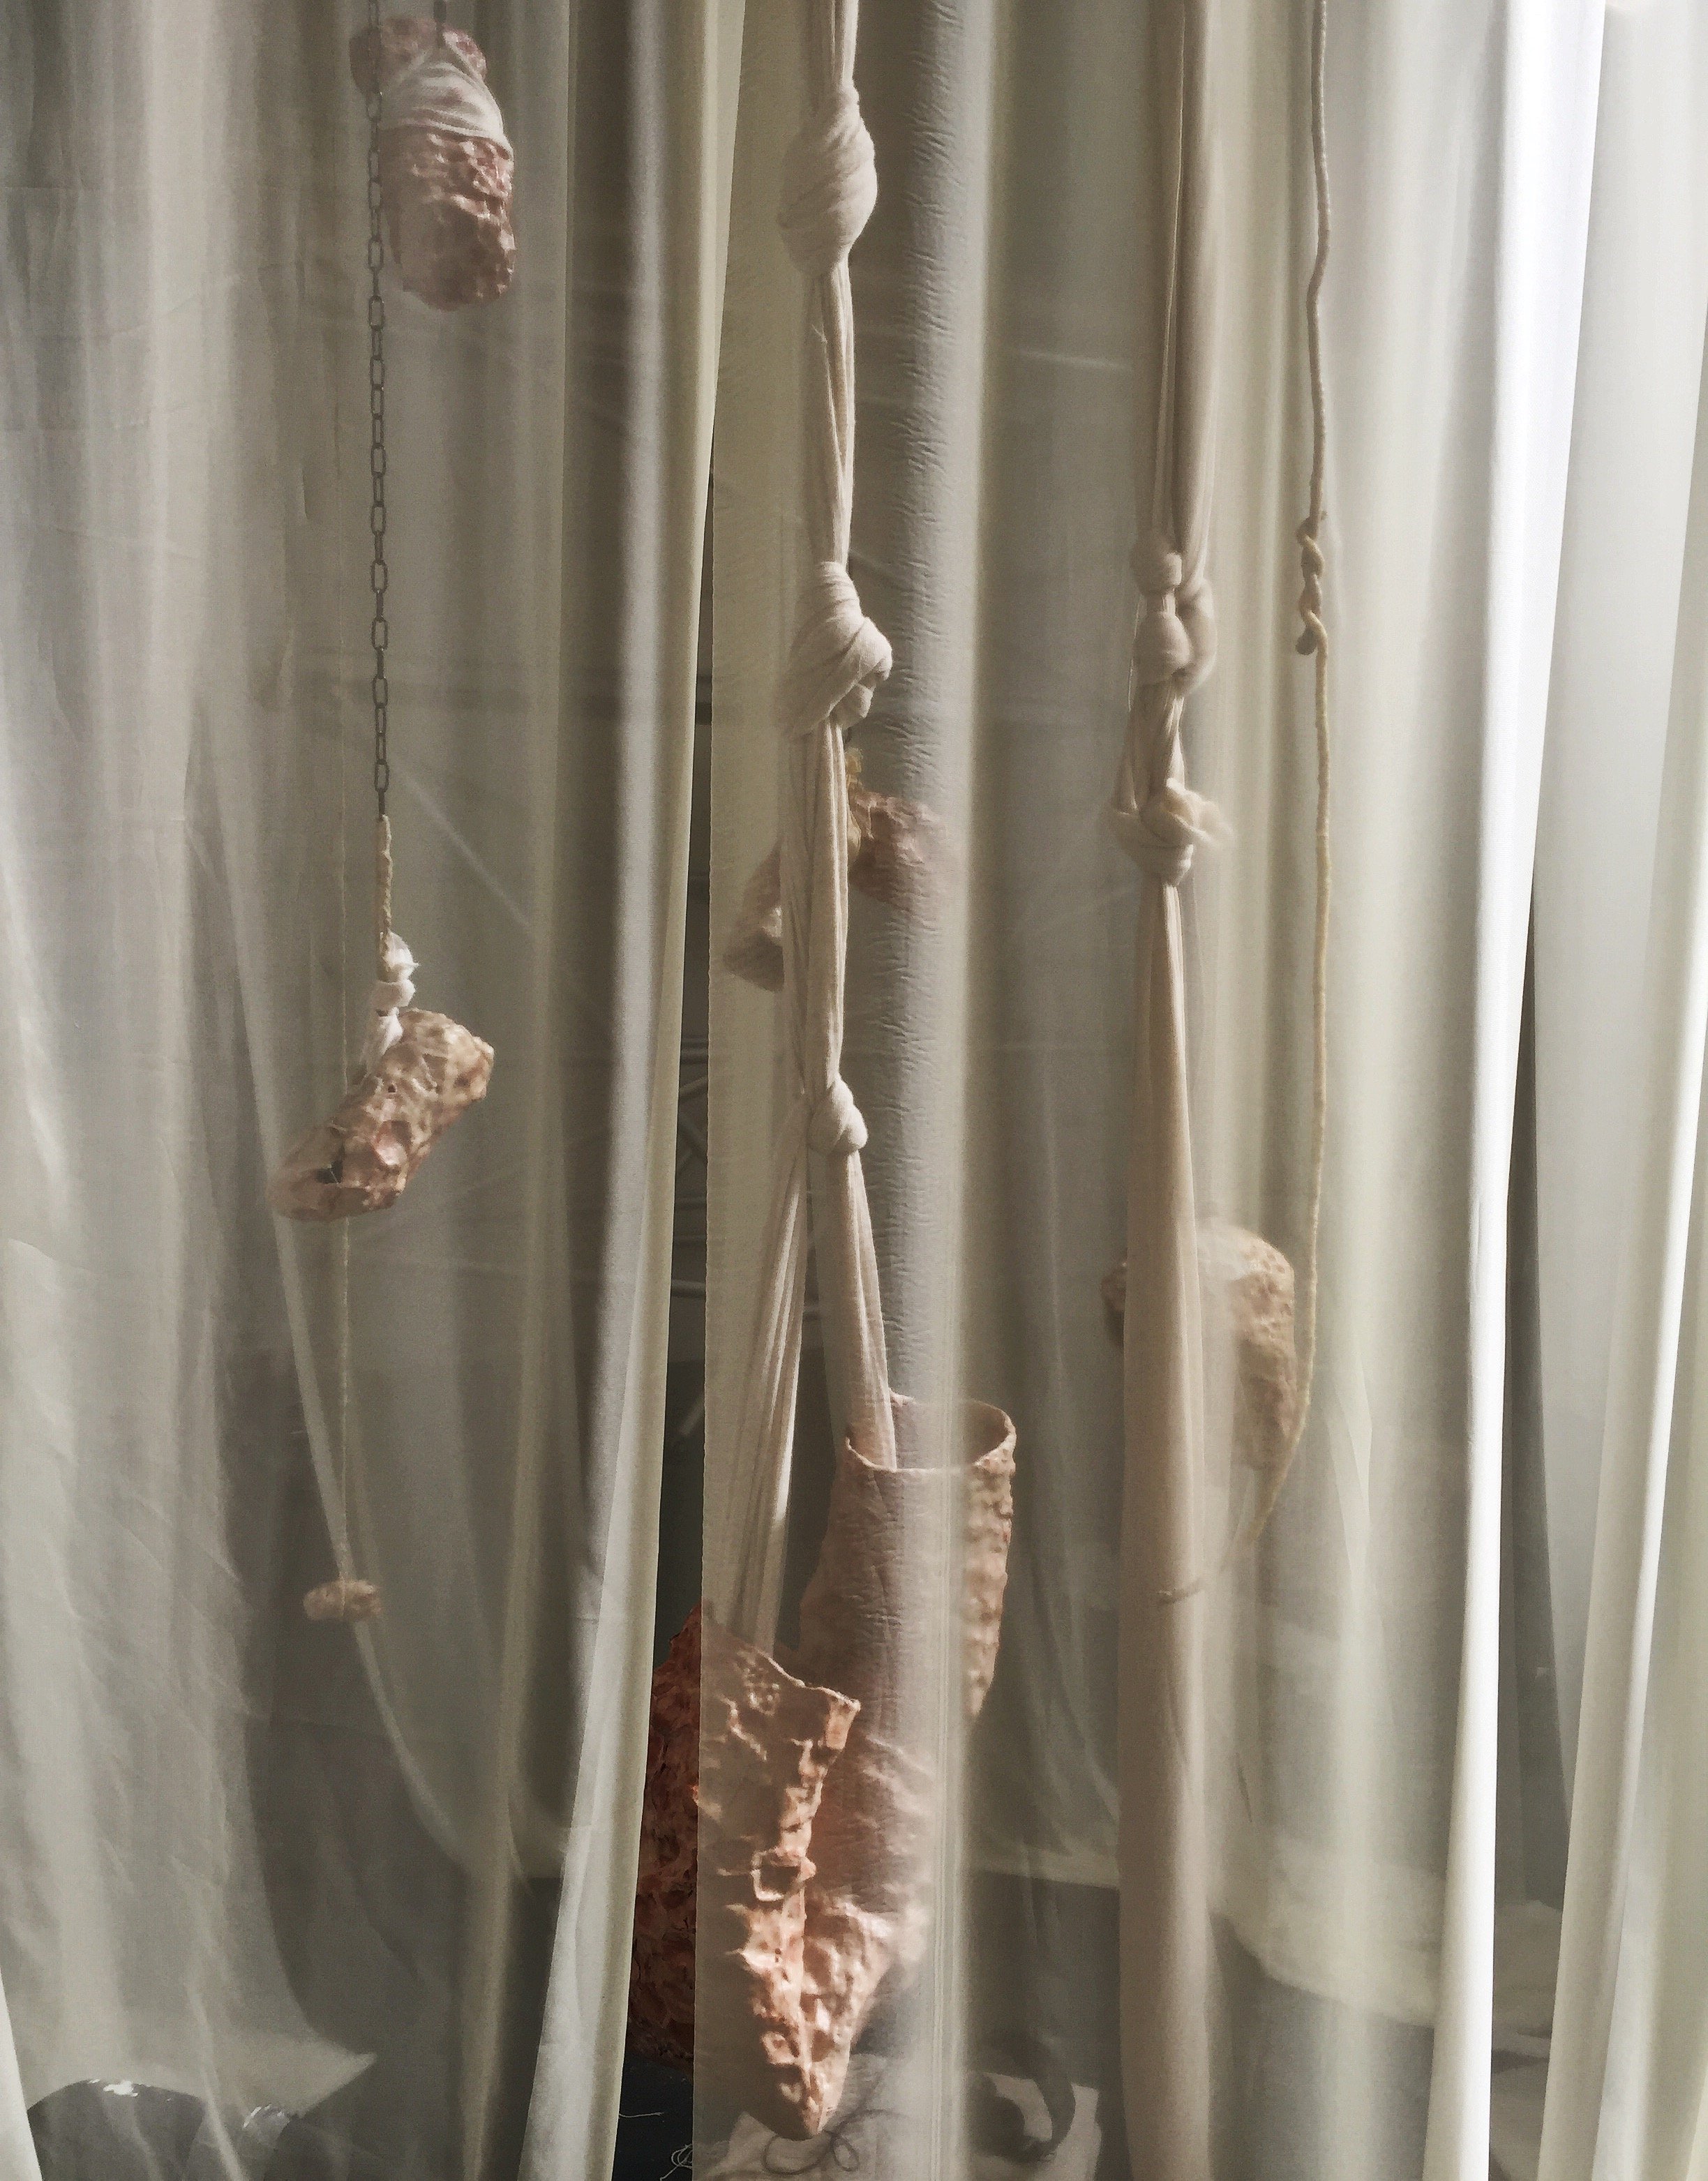   Escamas de Piel Mudada,  2018, Installation, air dry clay, wax, fabric, rope, chains. 